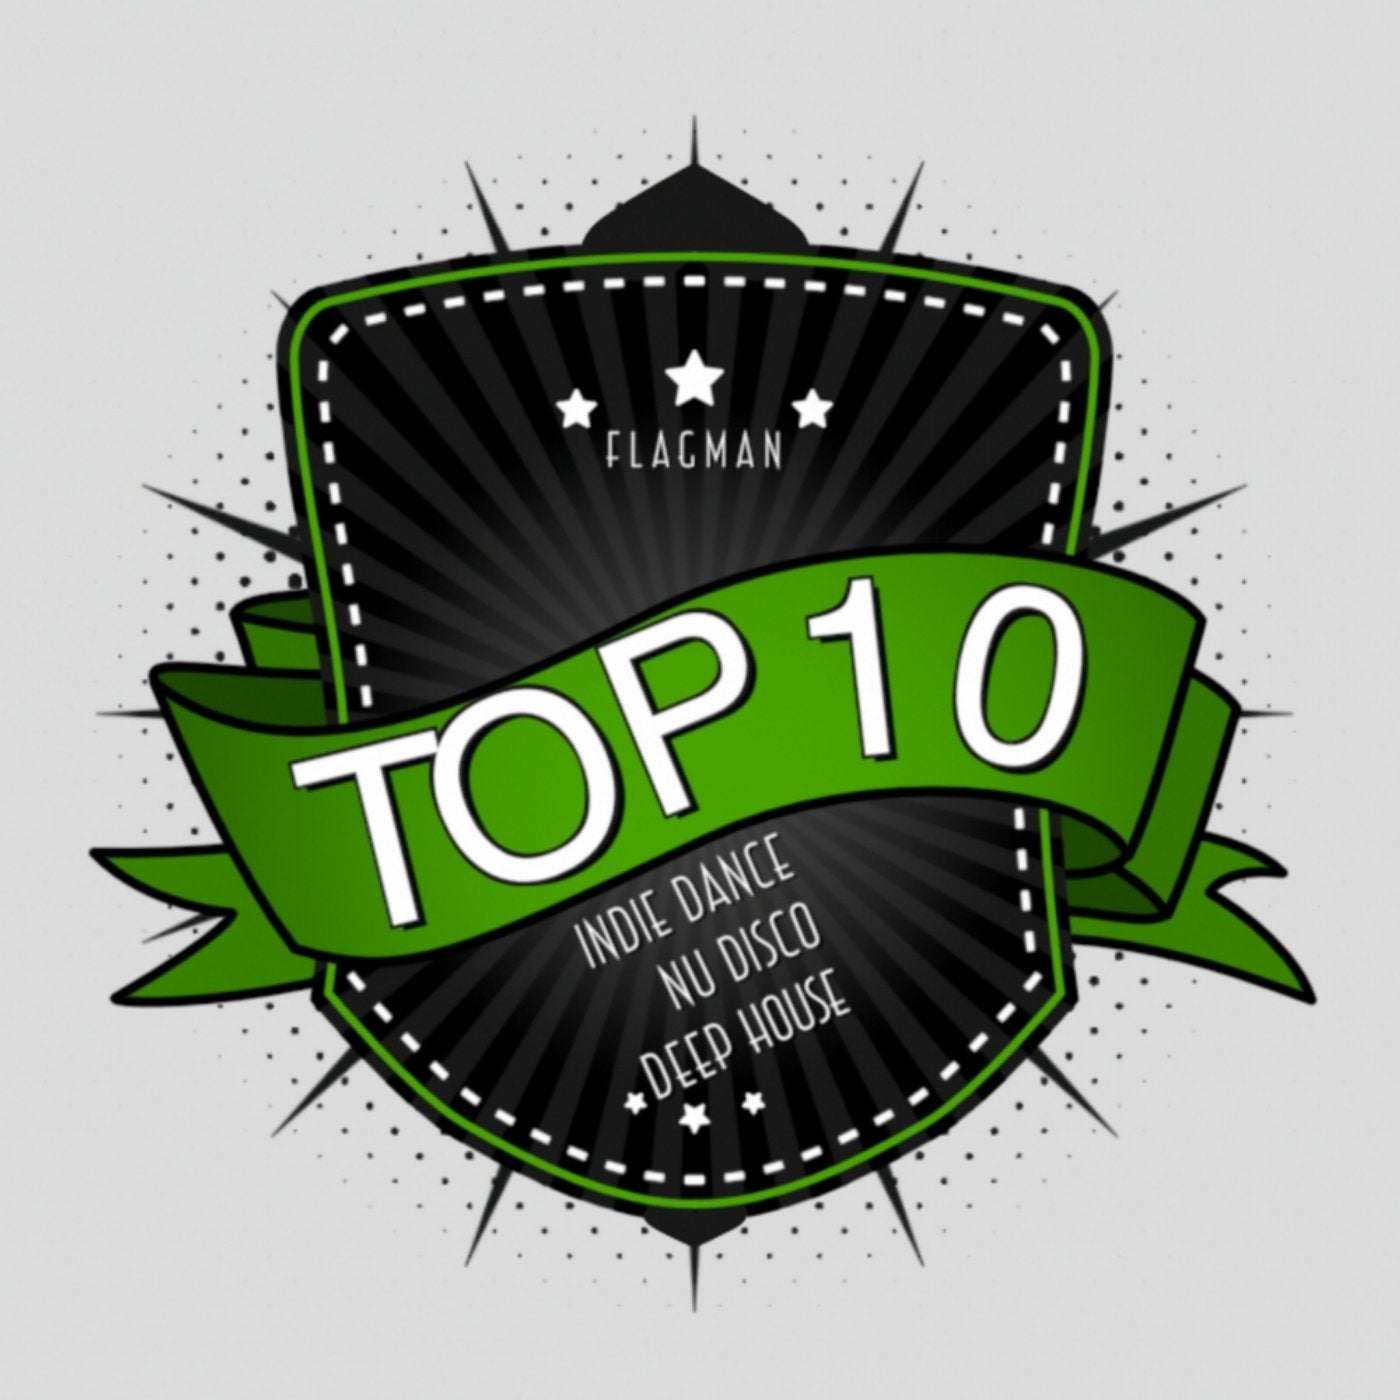 Flagman Top 10 Indie Dance / Nu Disco / Deep House